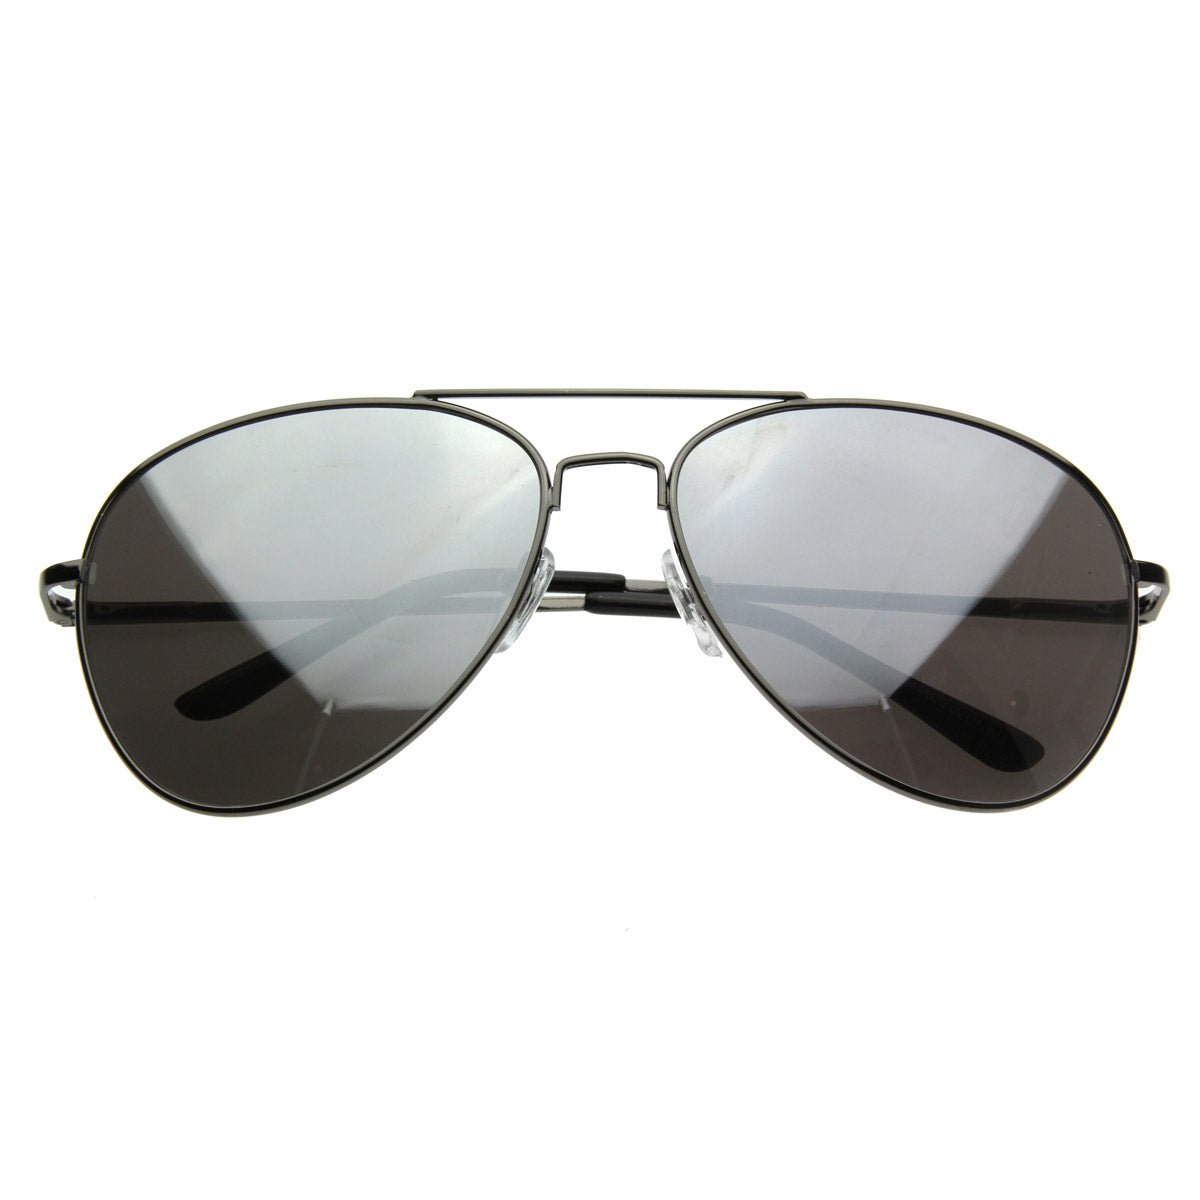 Metal Sunglasses Aviator MIRROR FULL Mirrored